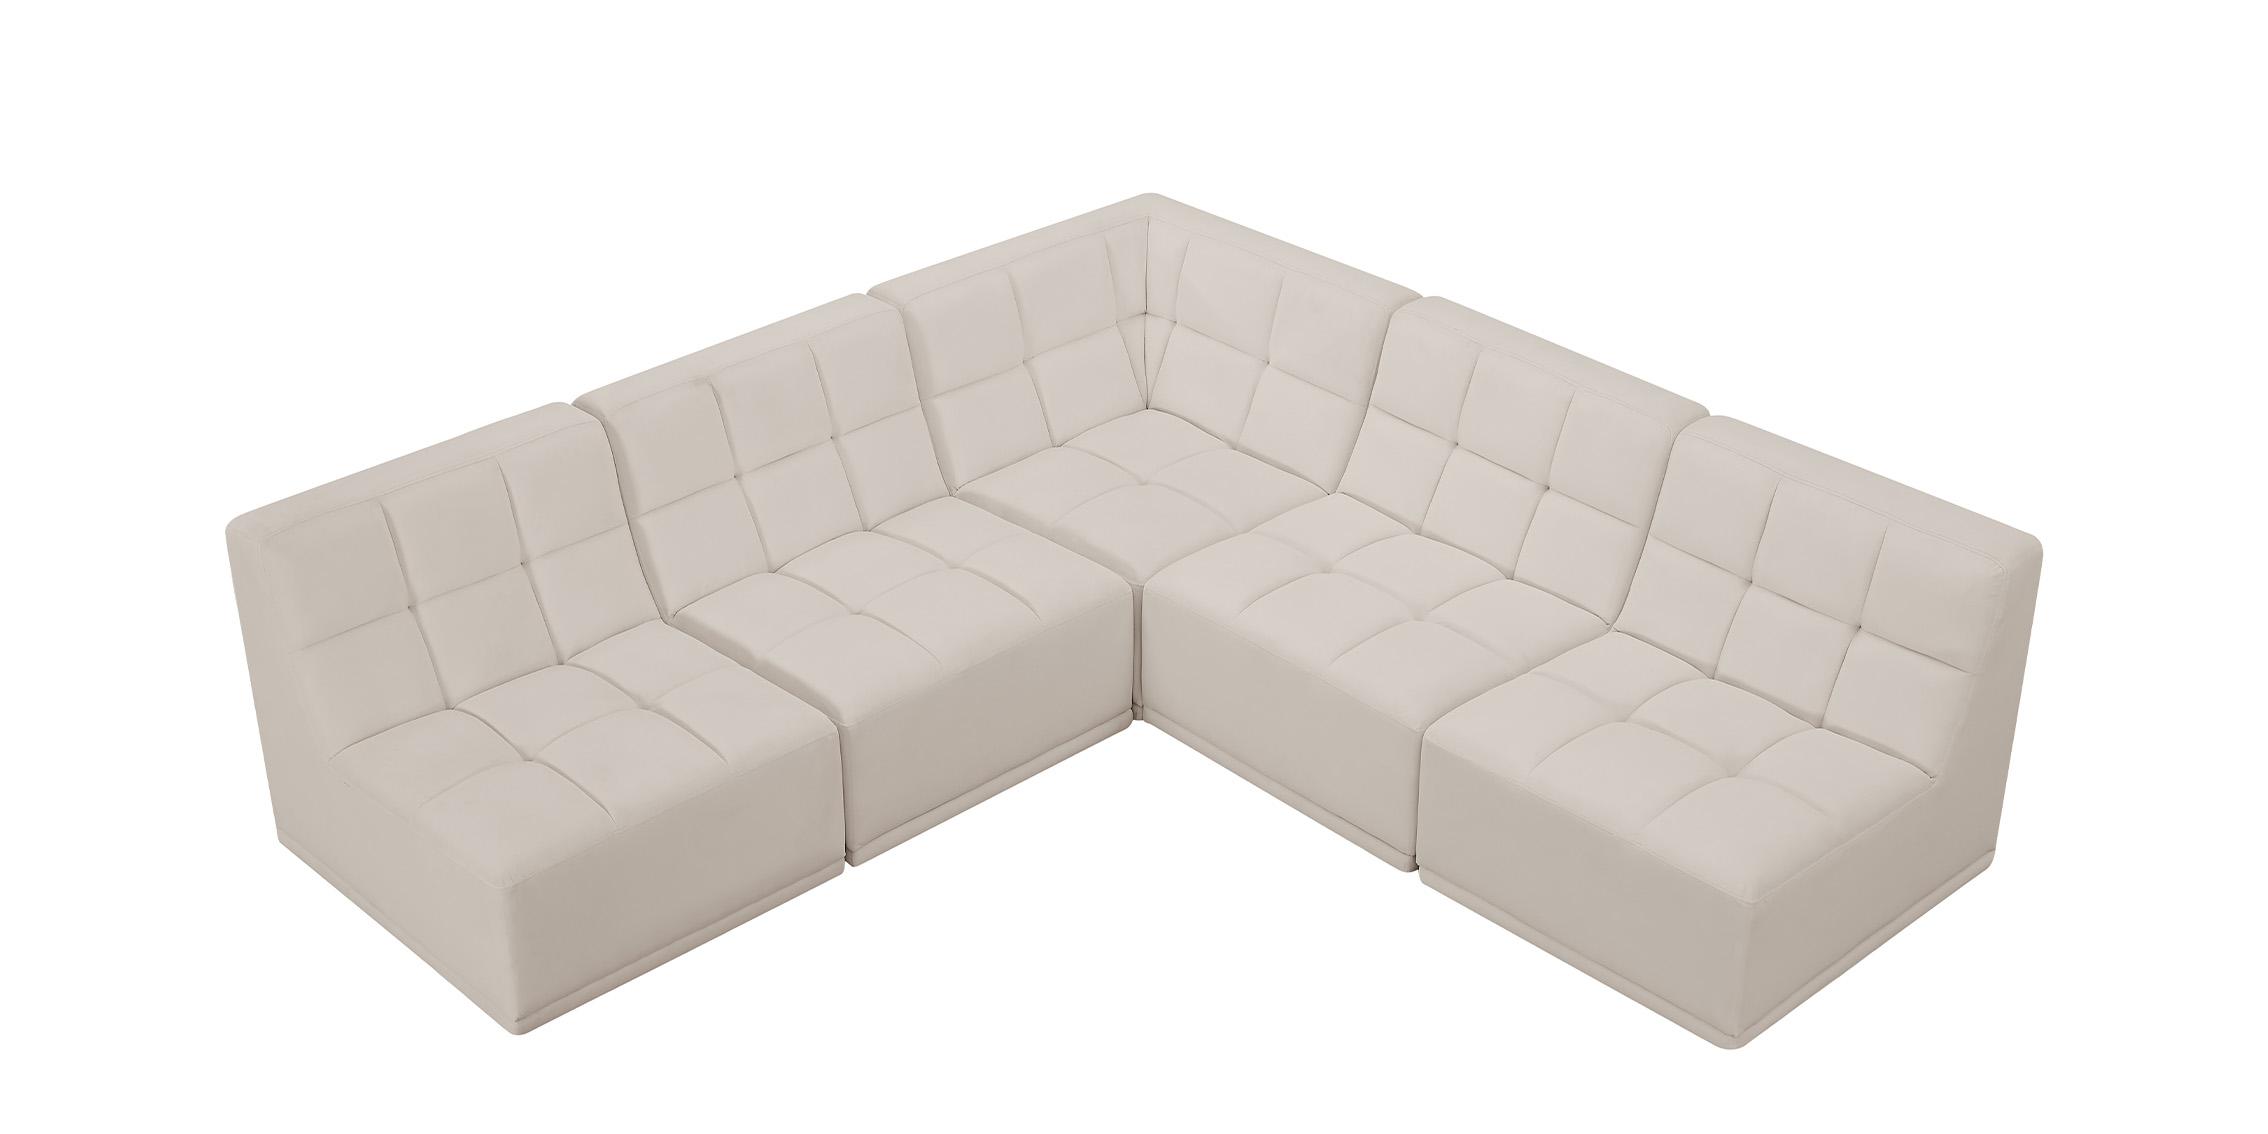 

    
Meridian Furniture RELAX 650Cream-Sec5C Modular Sectional Cream 650Cream-Sec5C
